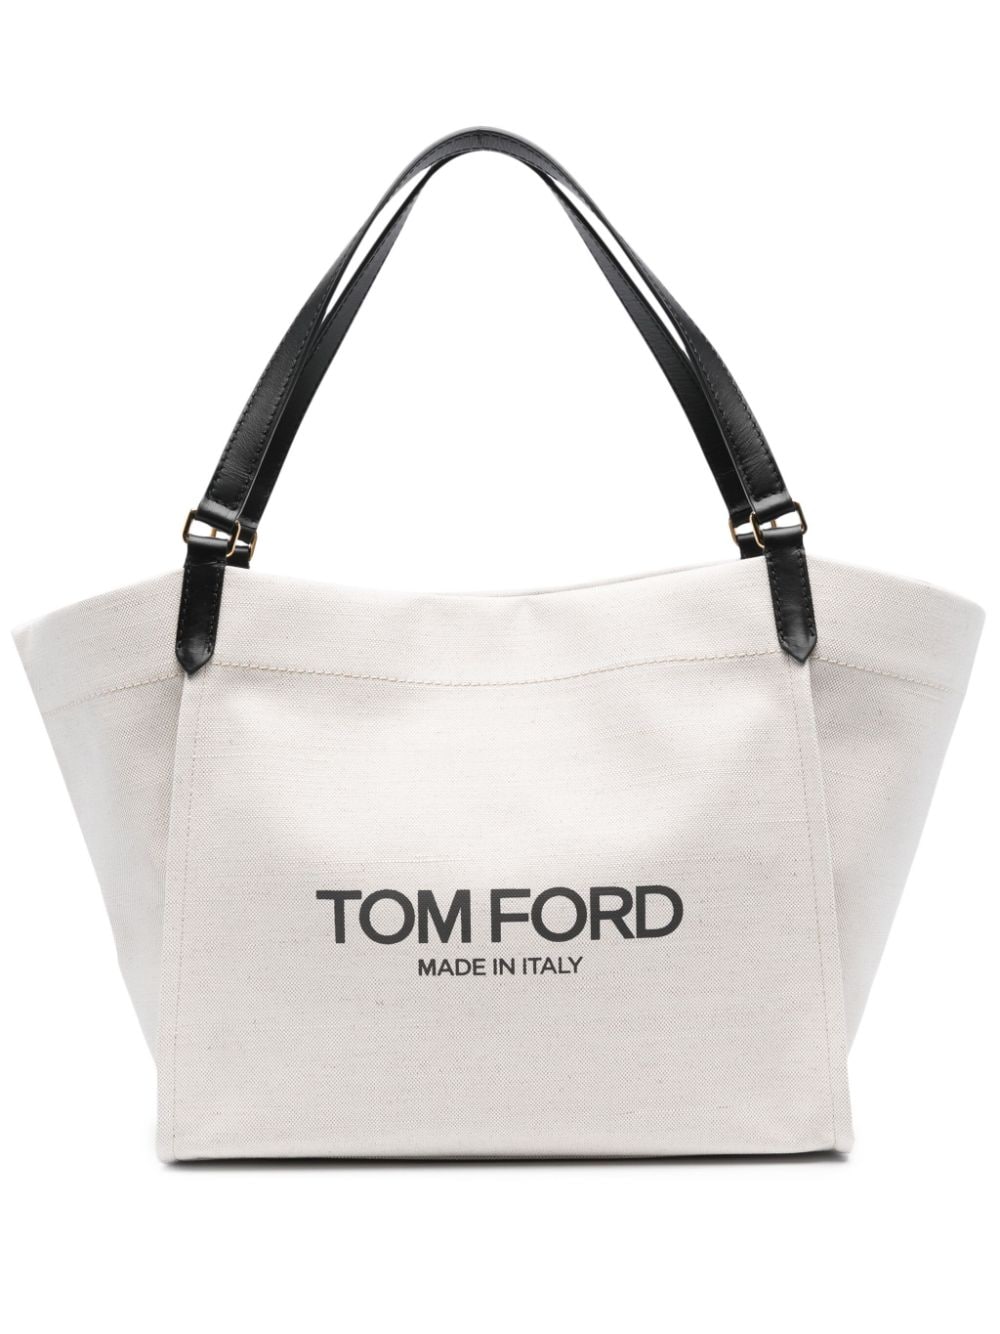 Tom Ford Amalfi Tote Bag